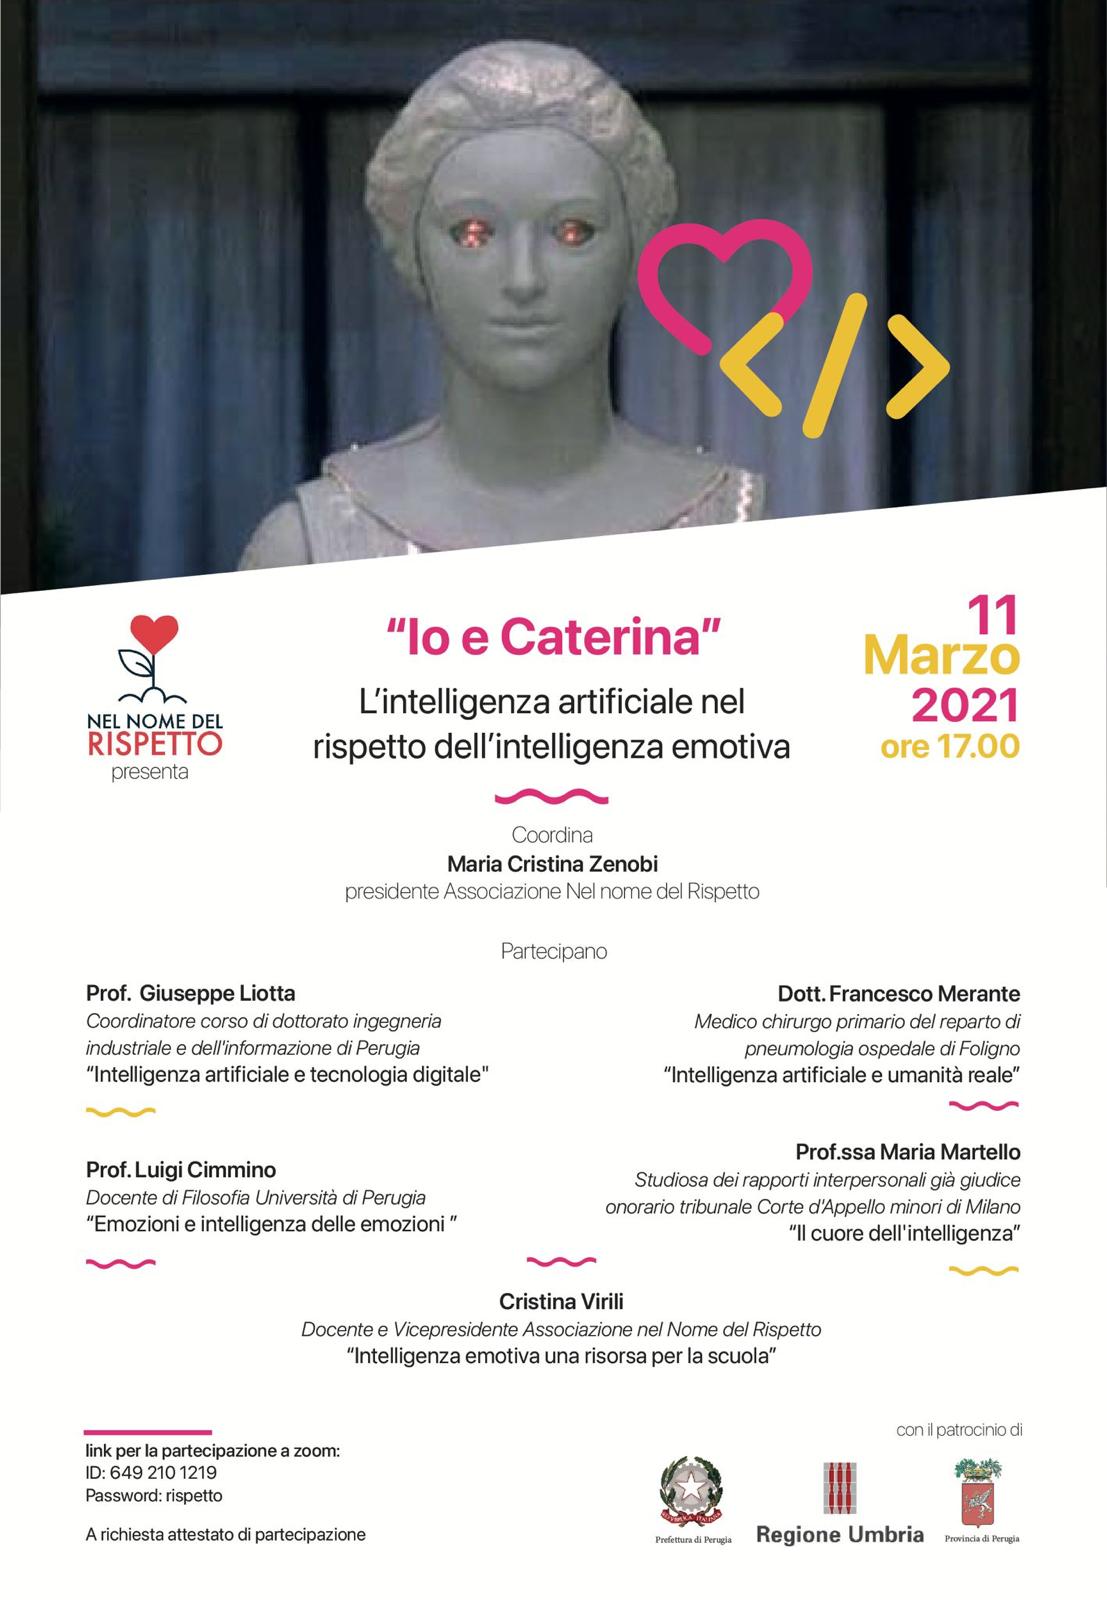 Evento online – “Io e Caterina, l’intelligenza artificiale nel rispetto dell’intelligenza emotiva”: esperti e studiosi a confronto